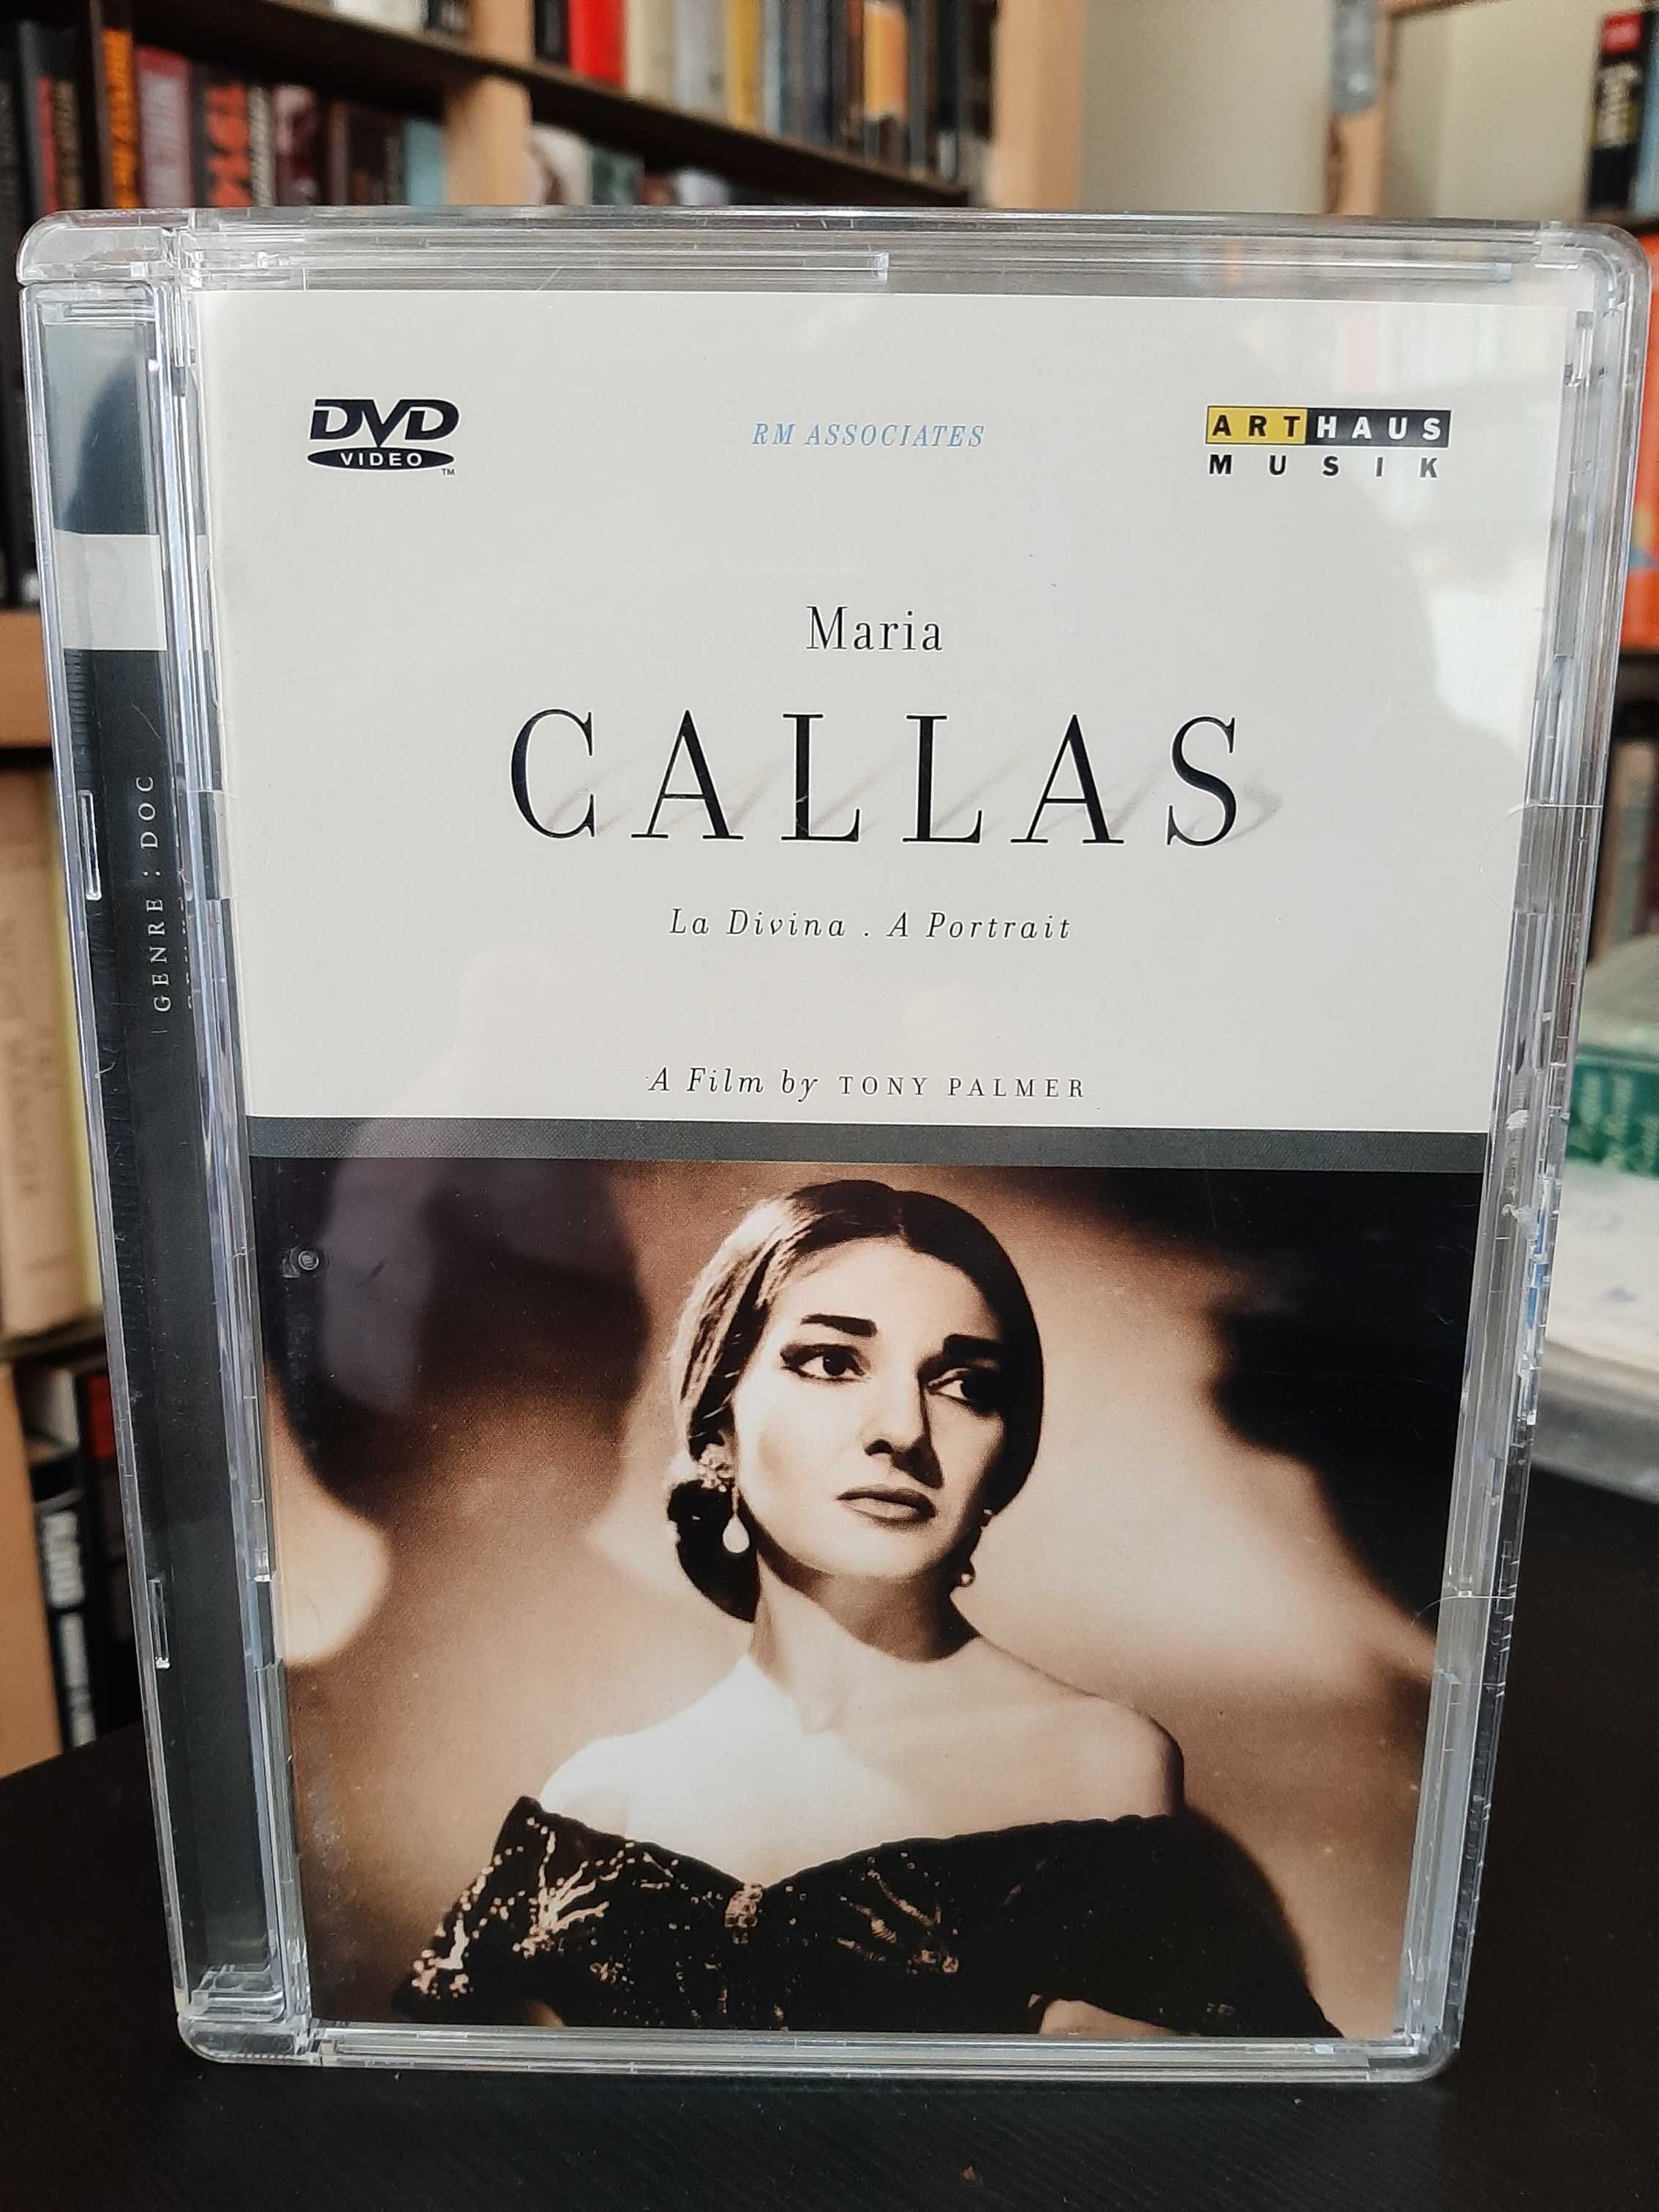 Maria Callas:  La Divina - A Portrait  –  A Film By Tony Palmer